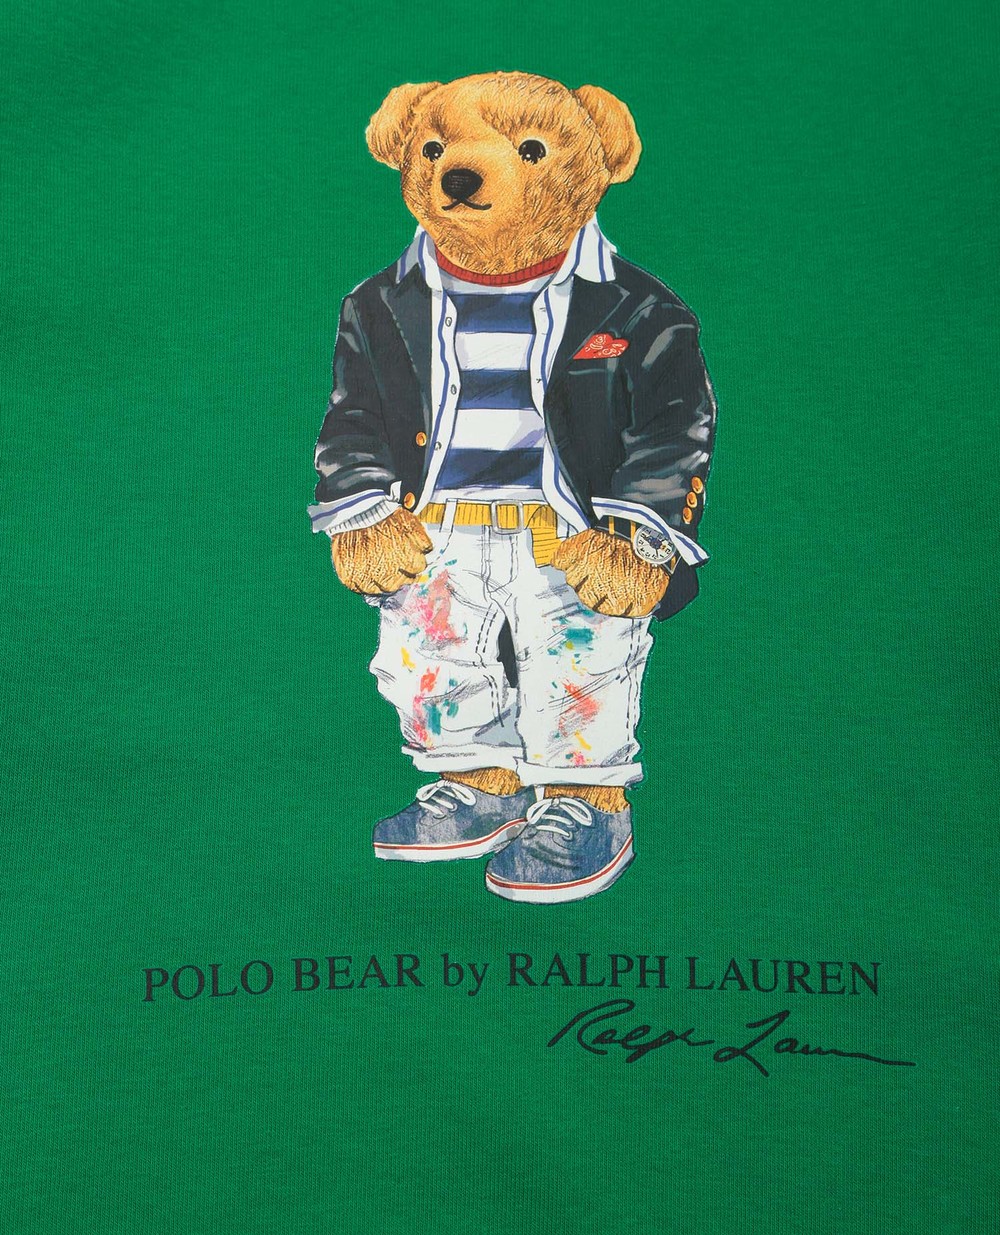 Детский свитшот Polo Ralph Lauren Kids 322858888001, зеленый цвет • Купить в интернет-магазине Kameron